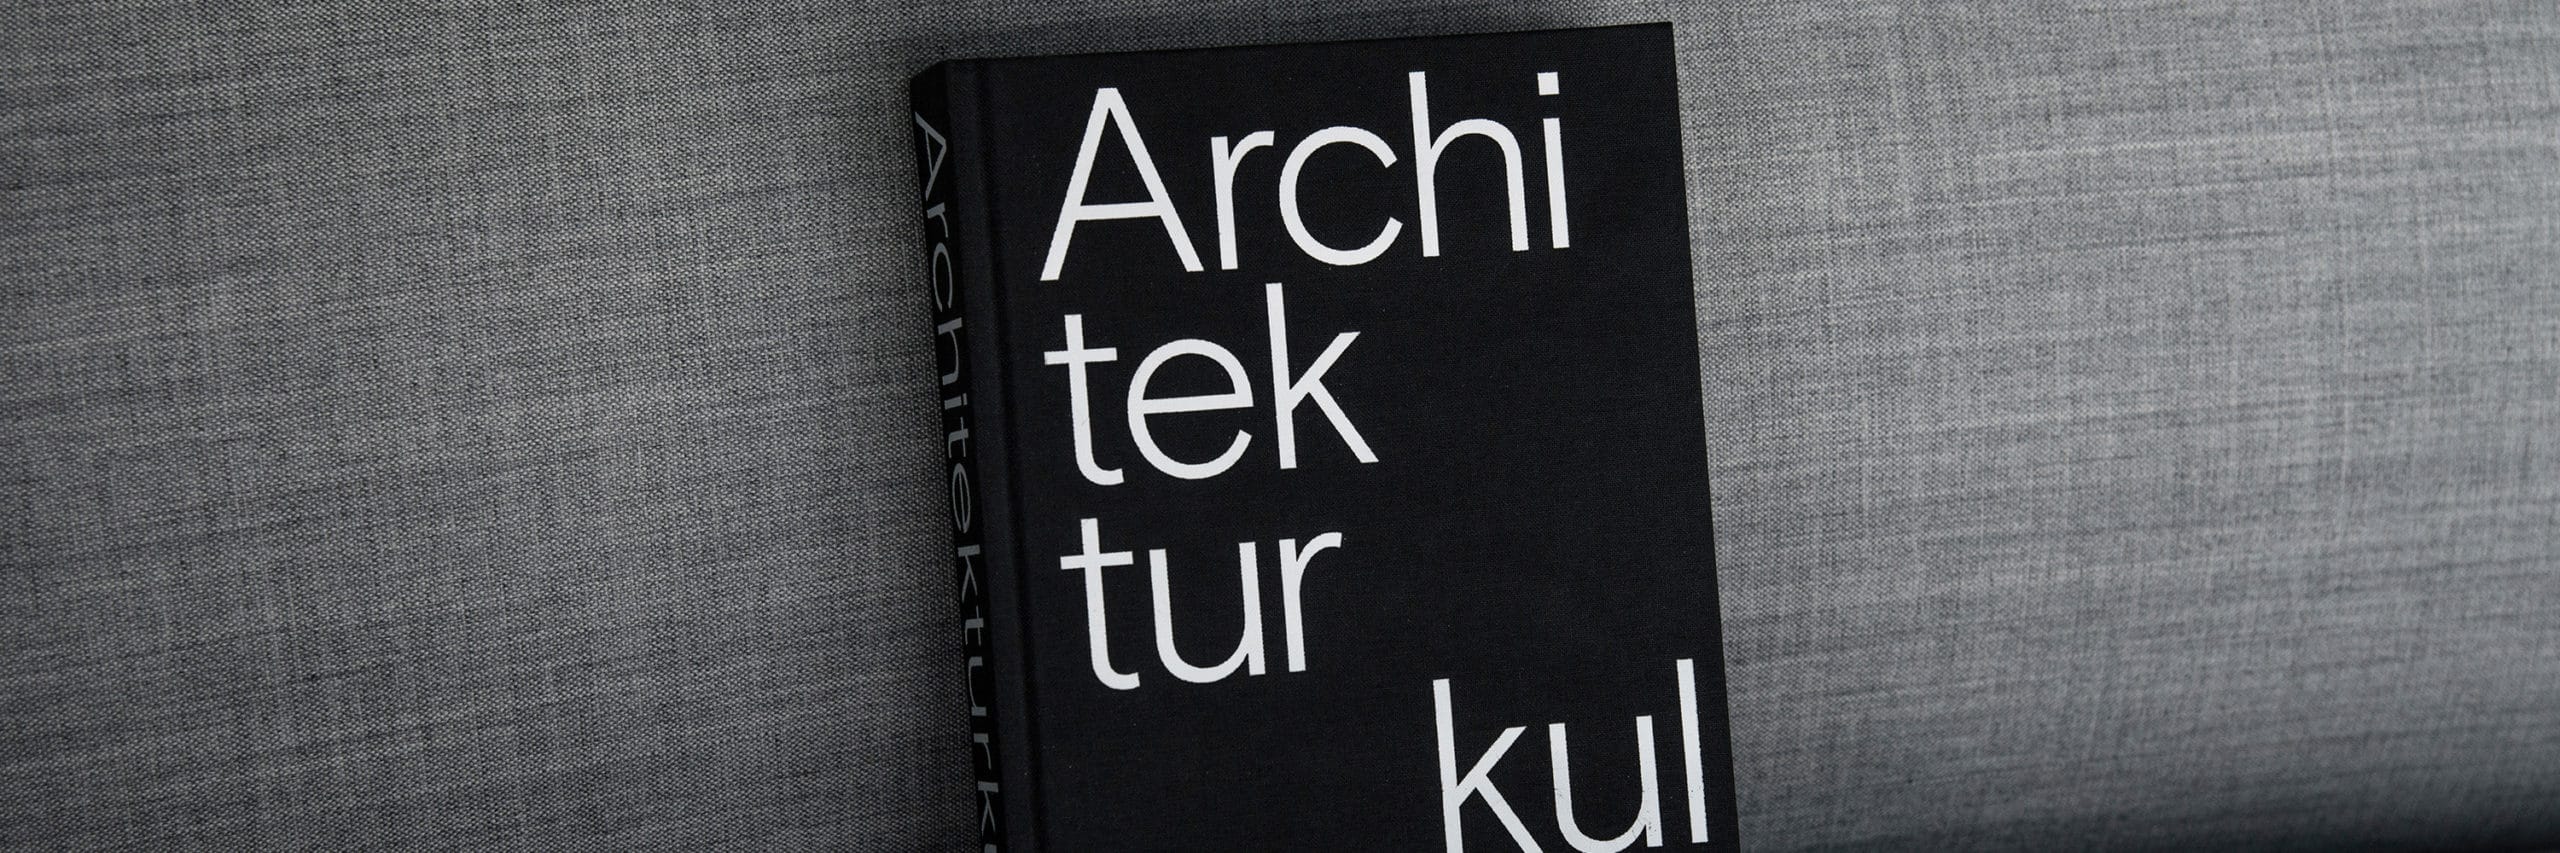 Architektur_Buch_3000x1000